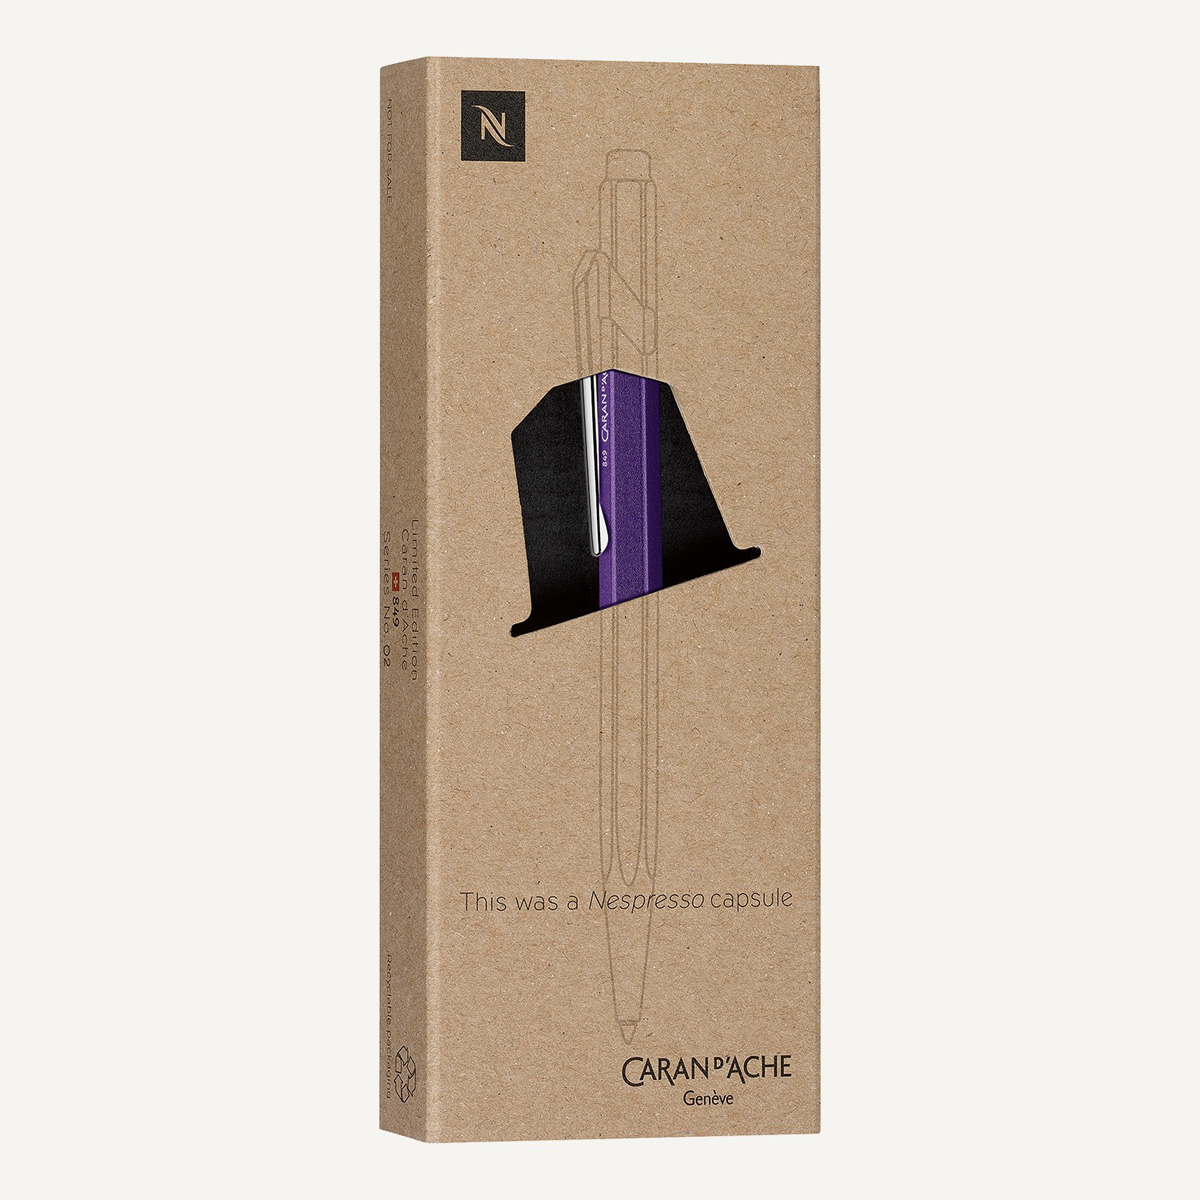 Caran d'Ache - 849 - Nespresso Edizione 3 - Limited Edition - Ballpoint pen